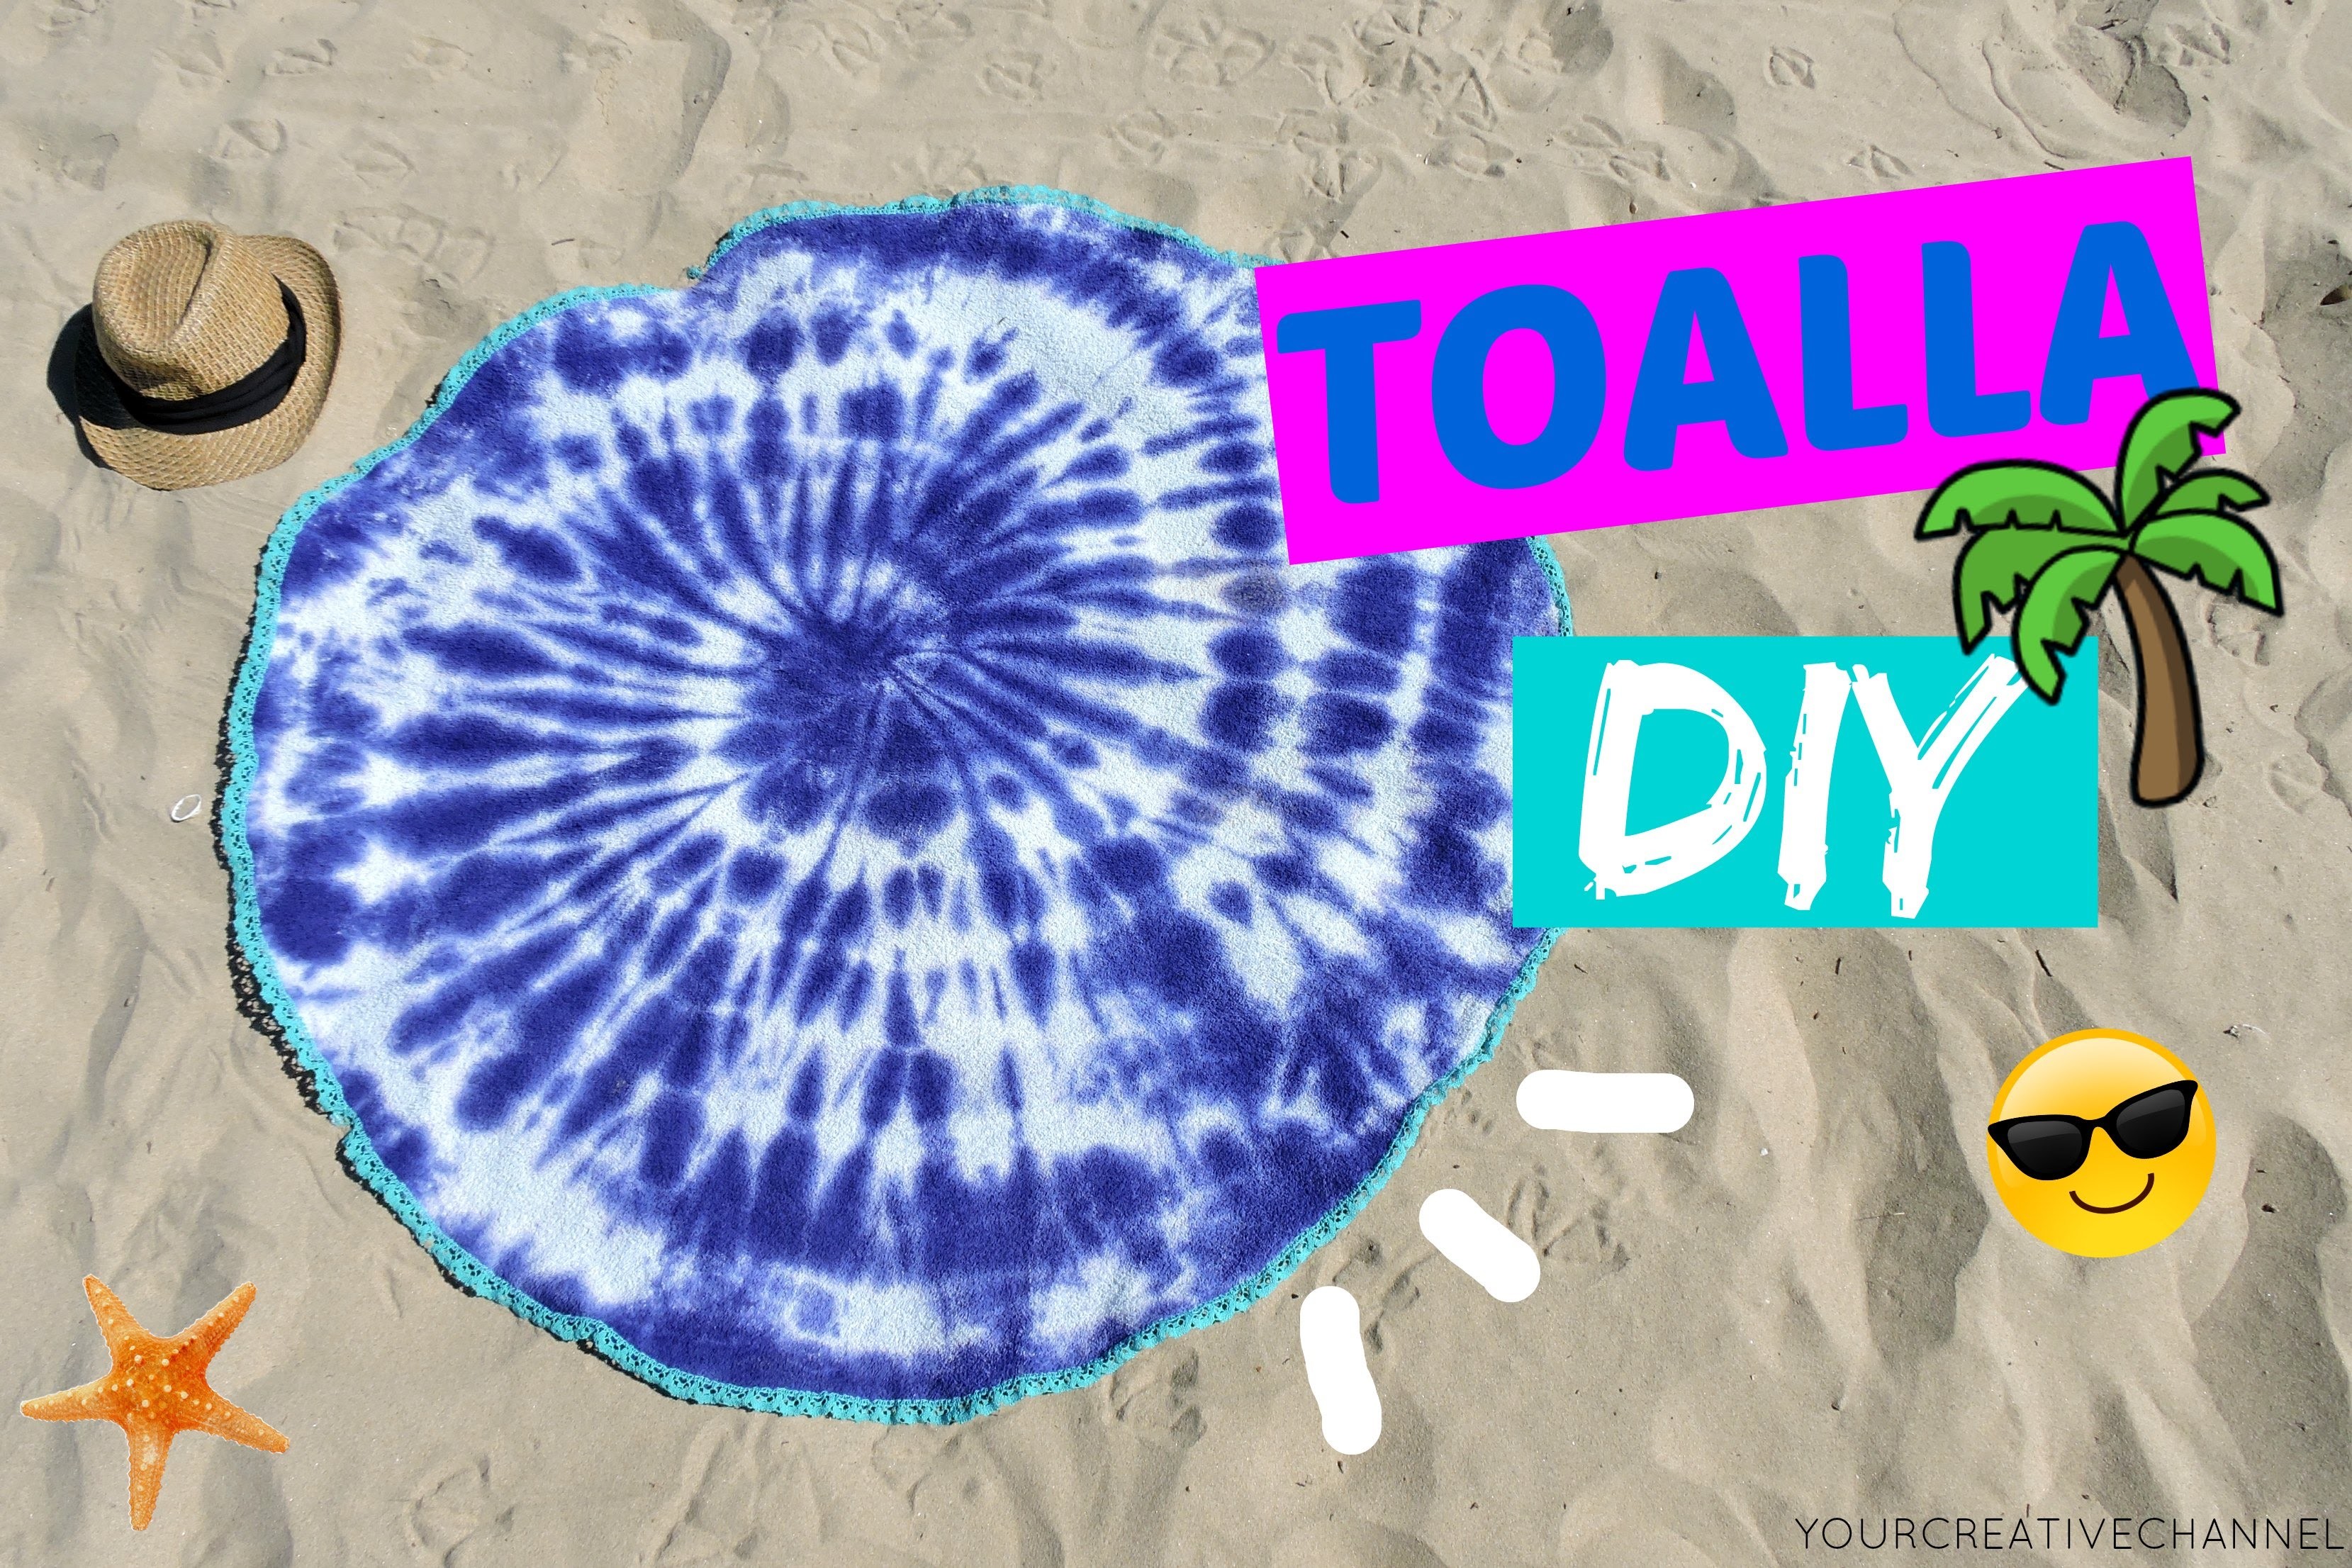 DIY Verano - Toalla redonda teñida - Summer DIY - round towel tie dye